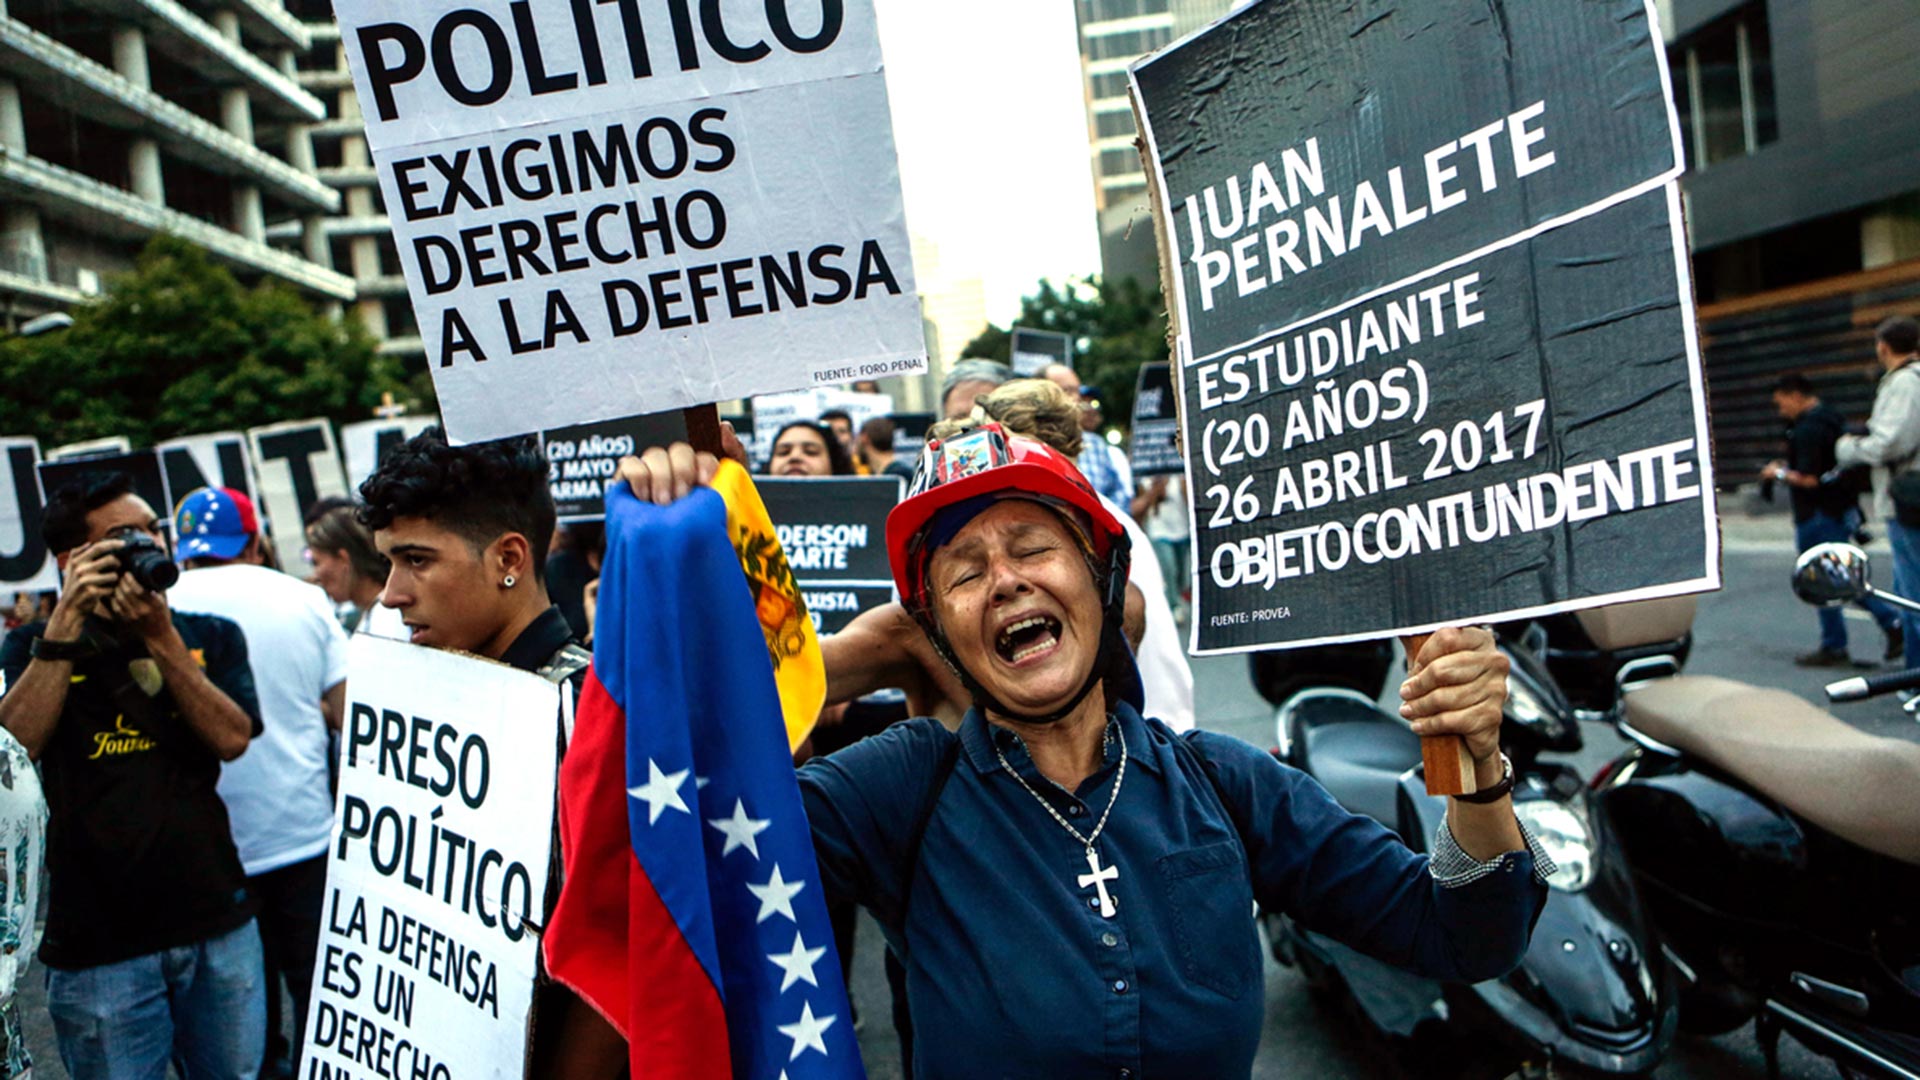 Las víctimas de la represión en Venezuela siguen a la espera de los resutados de la investigación de la CPI contra el régimen de Maduro